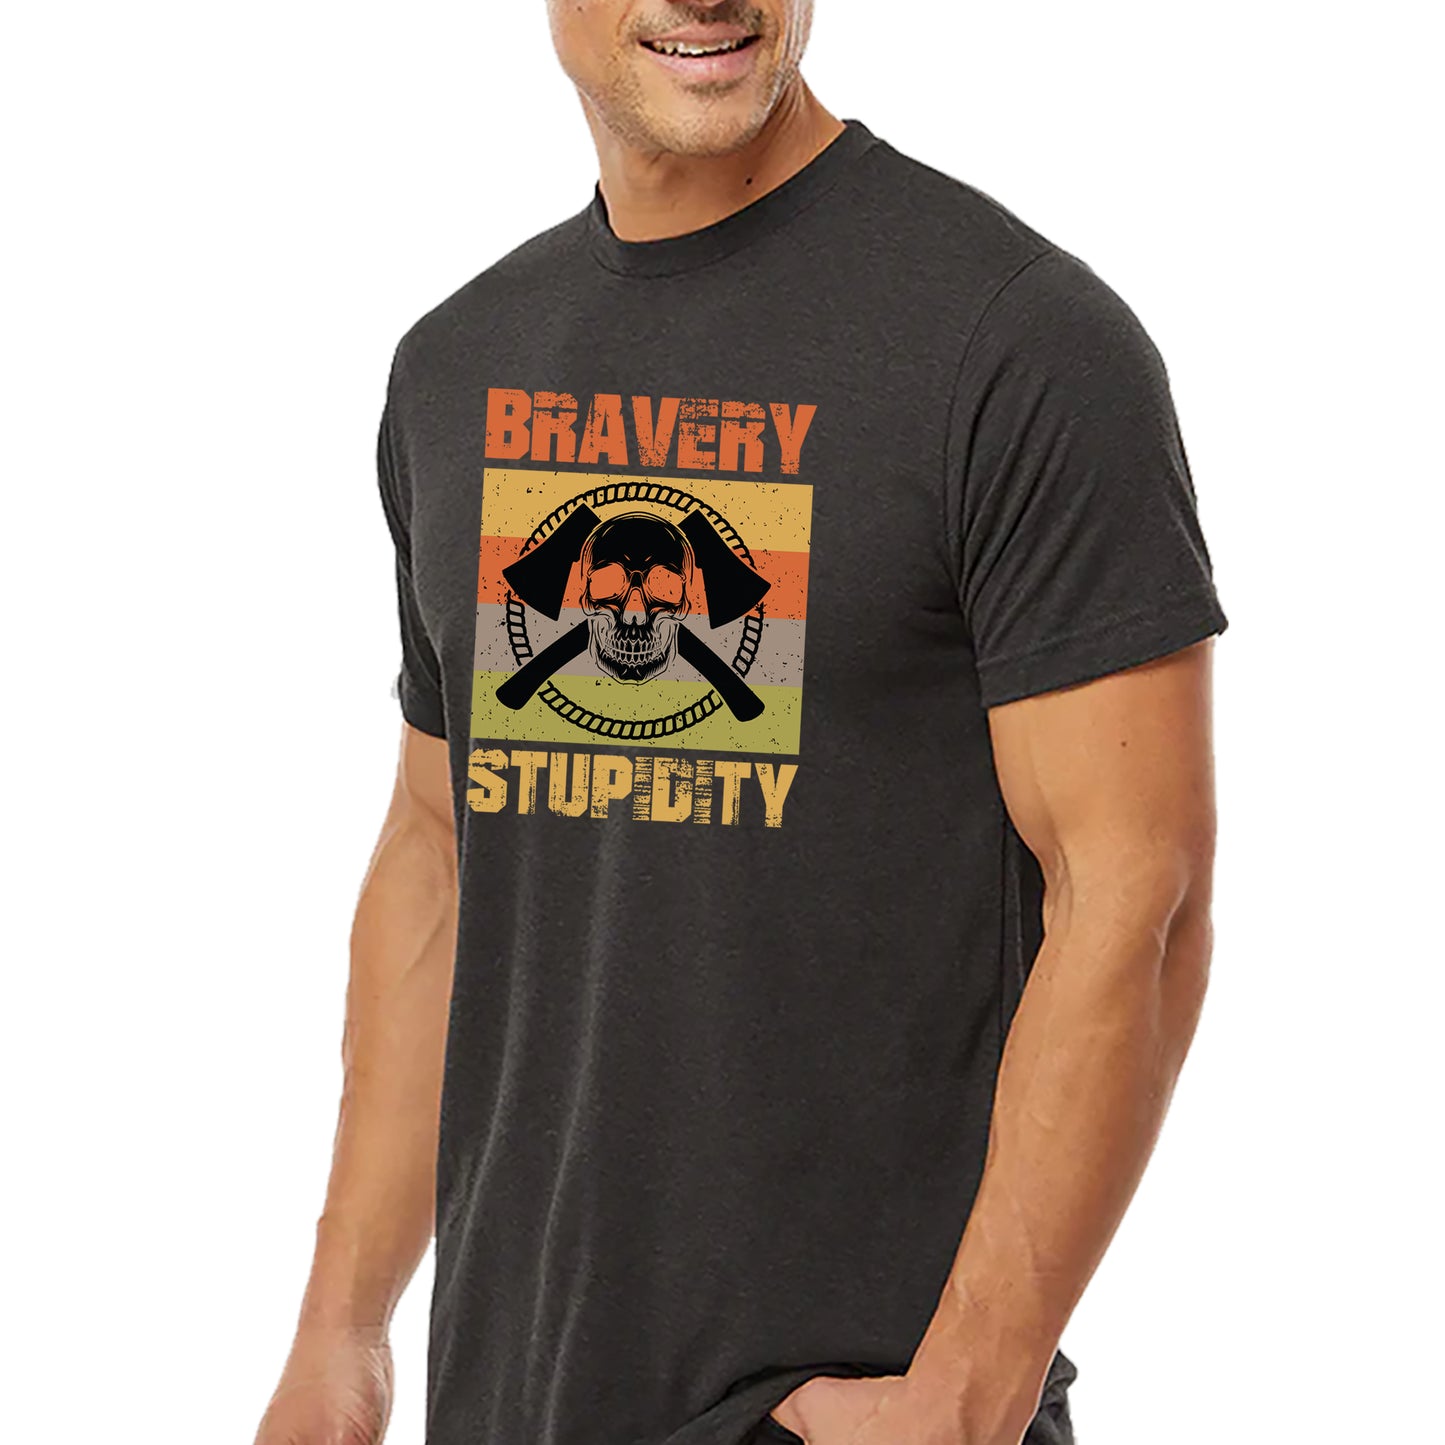 Bravery Stupidity T-shirt